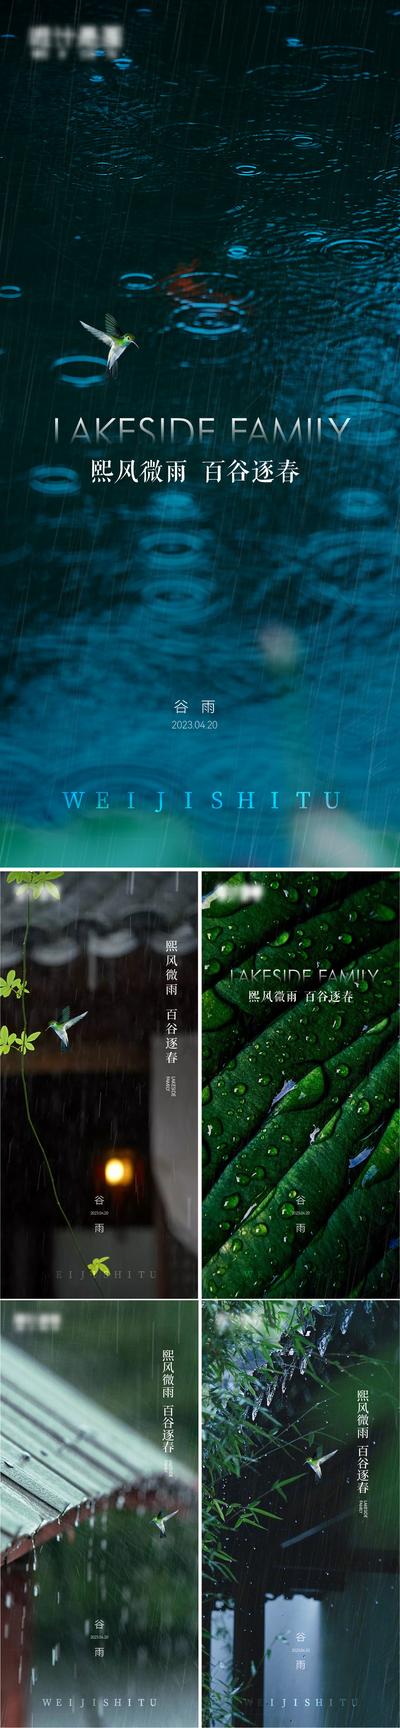 南门网 海报二十四节气 谷雨 美图 雨水 绿色 微信 地产 系列